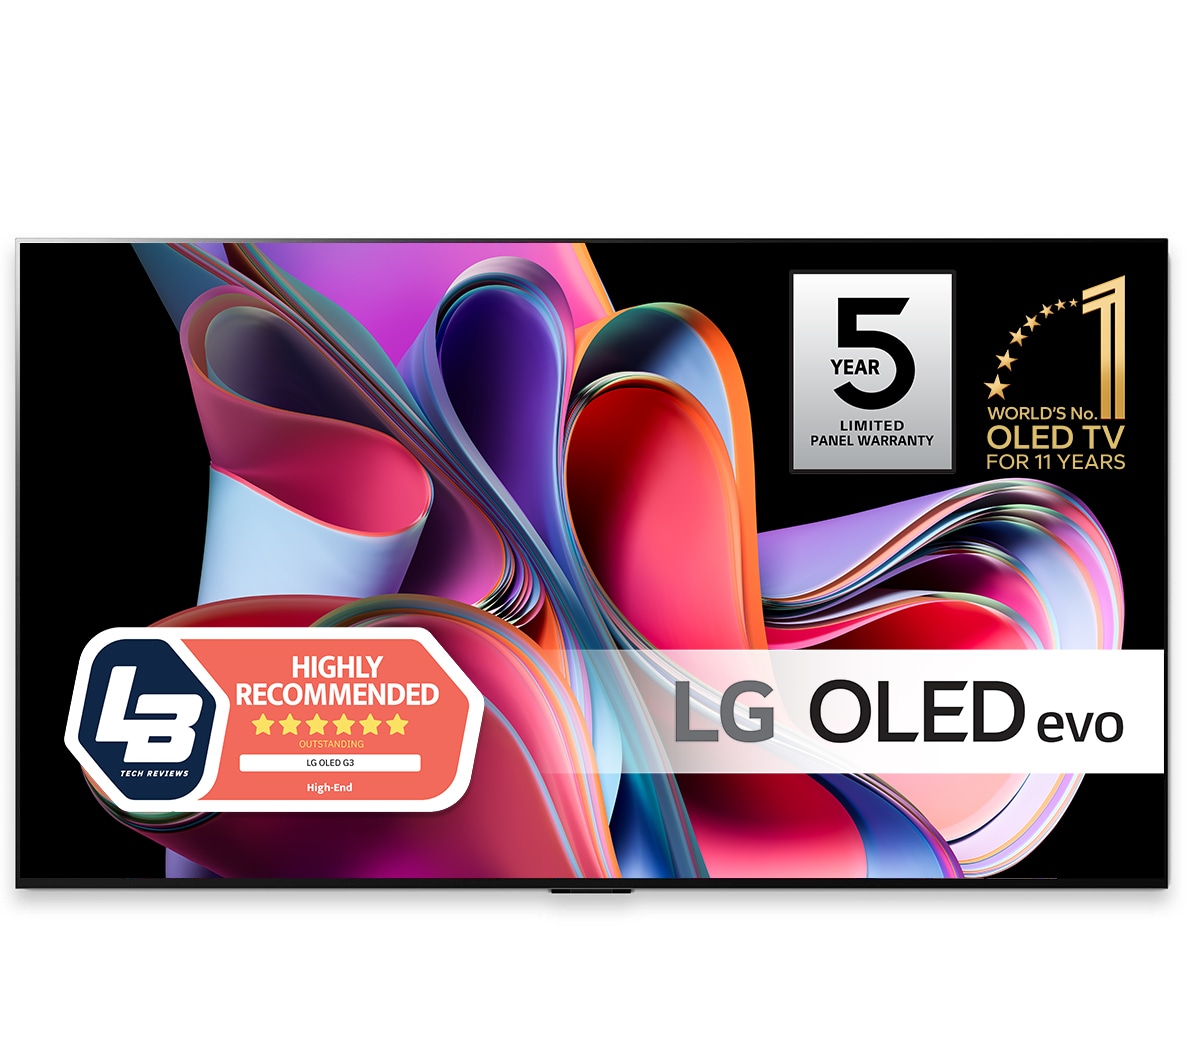 LG 65 CS 4K OLED TV (2022) - Elkjøp